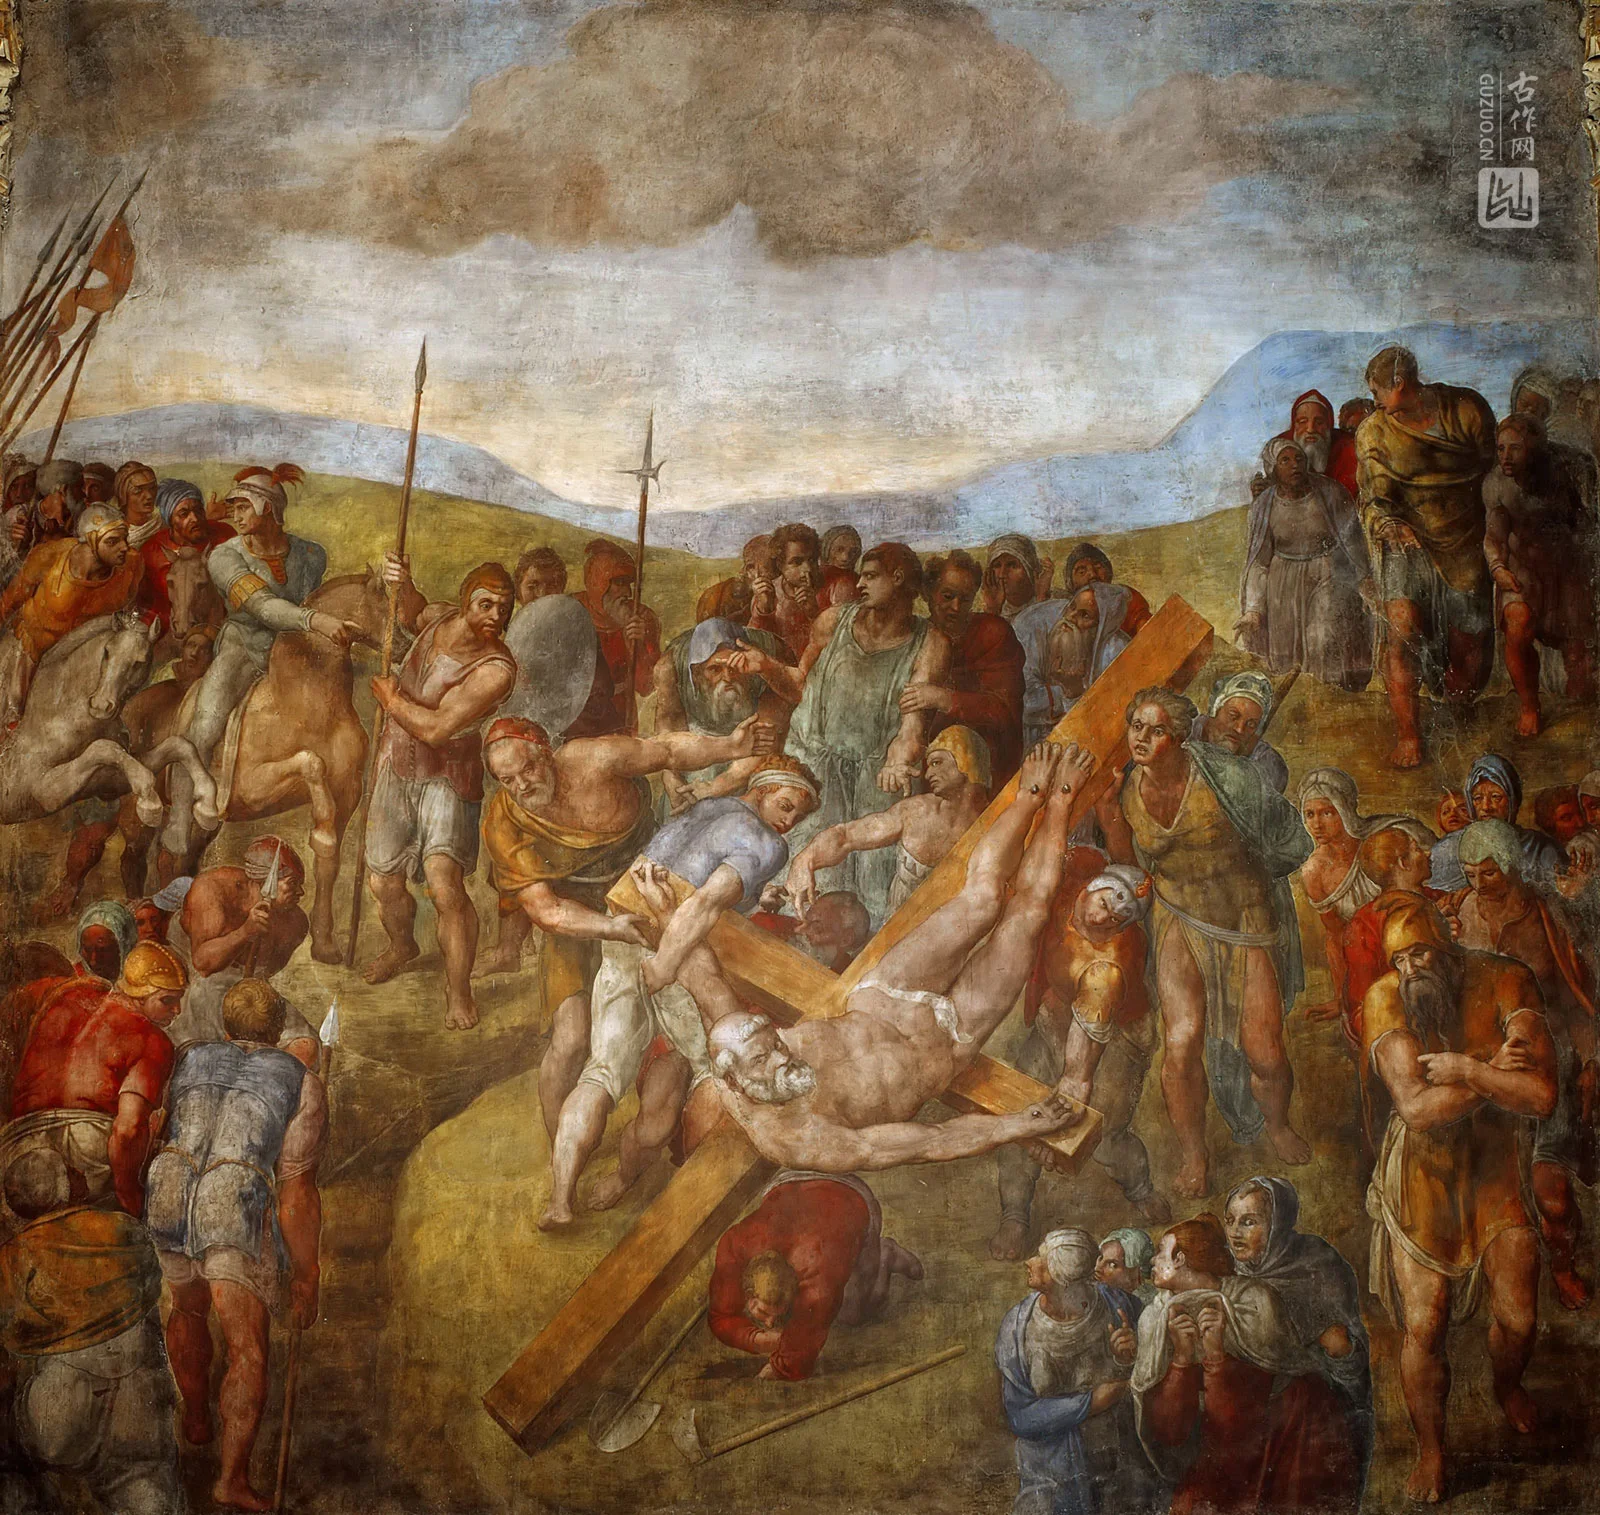 米开朗基罗壁画作品《圣彼得殉道》高清图片